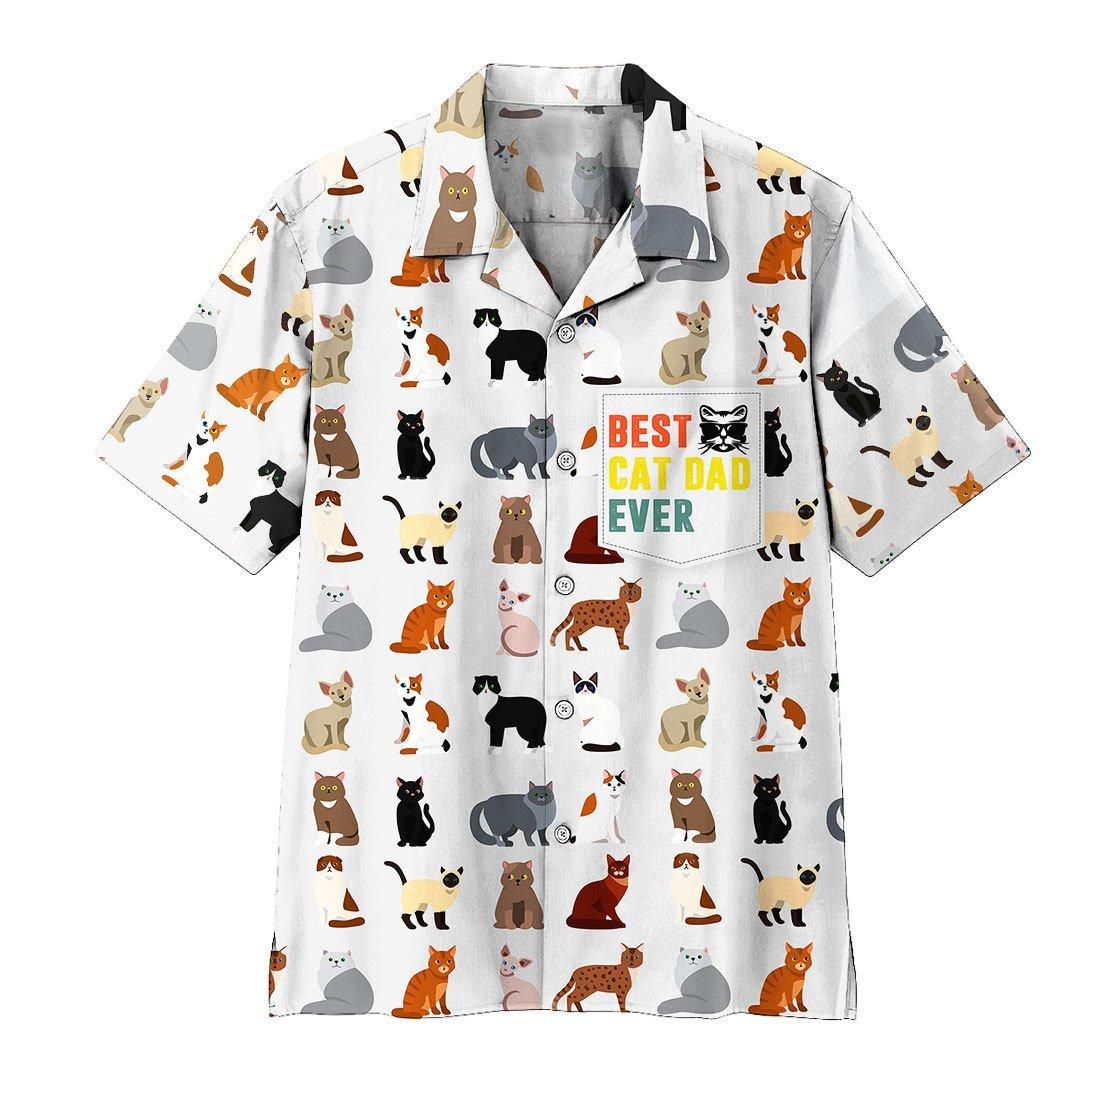 Gearhumans 3D Best Cat Dad Ever Hawaii Shirt ZK0705212 Hawai Shirt Short Sleeve Shirt S 